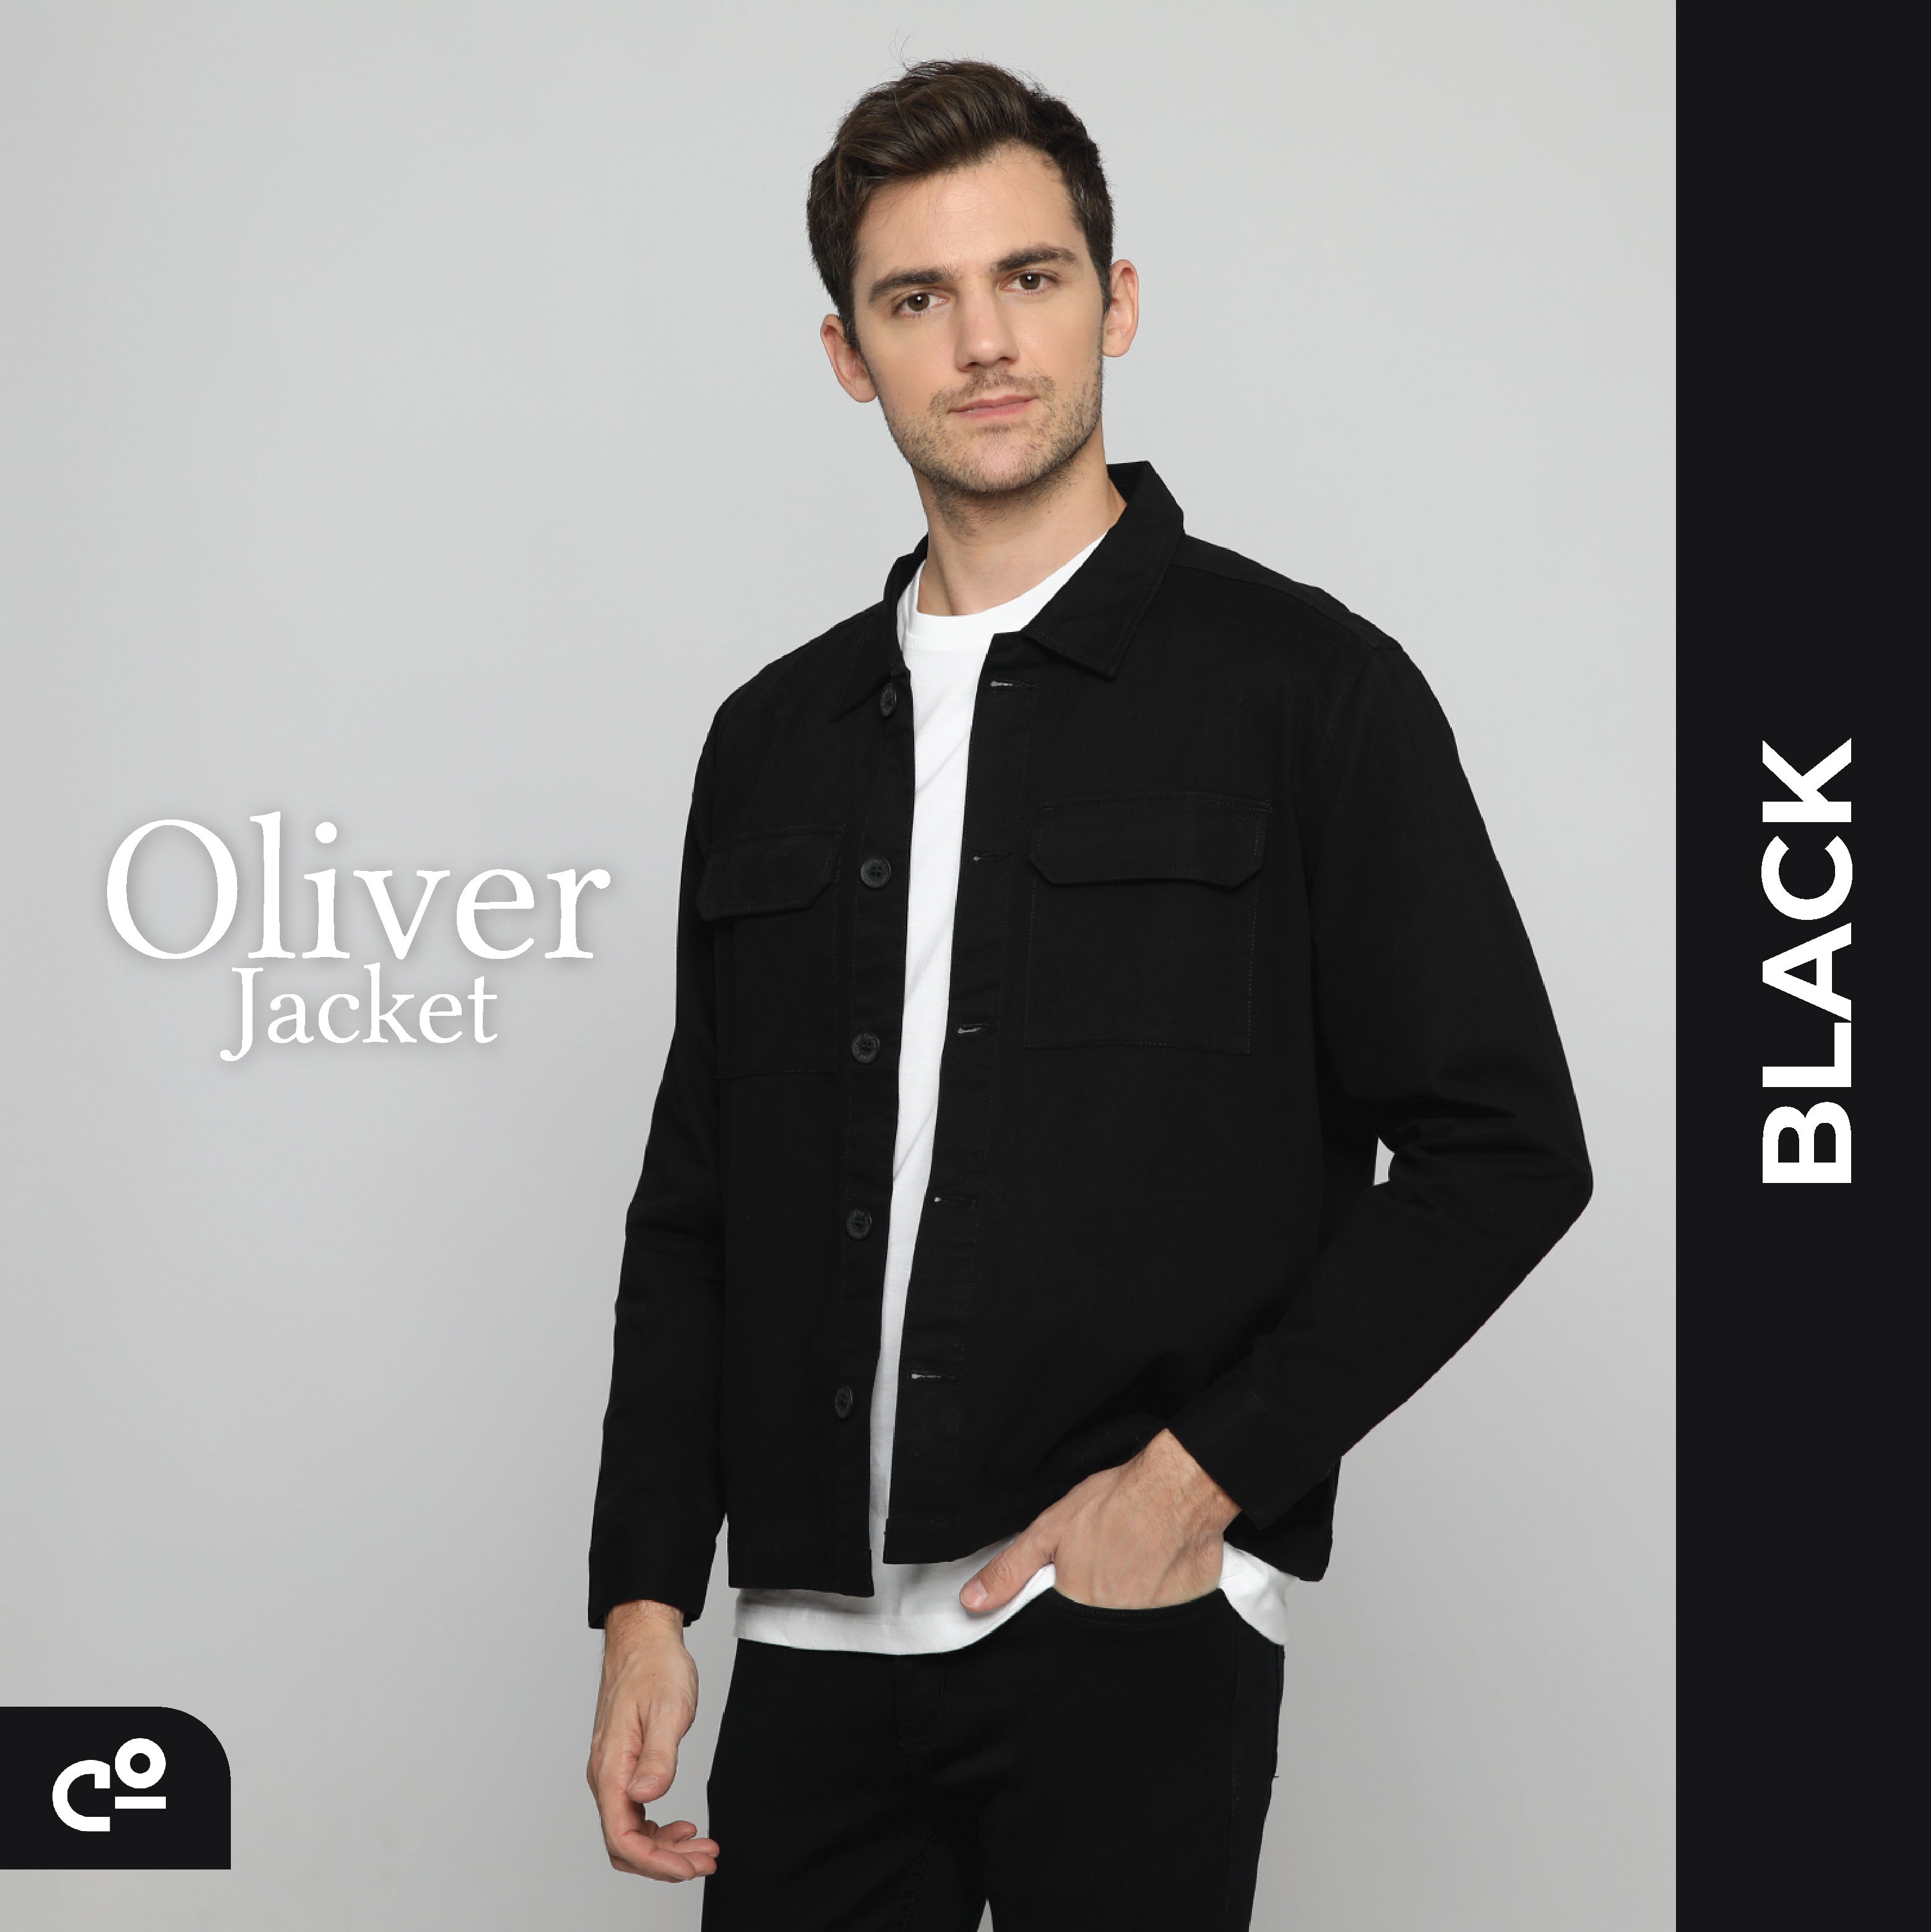 Oliver Jacket